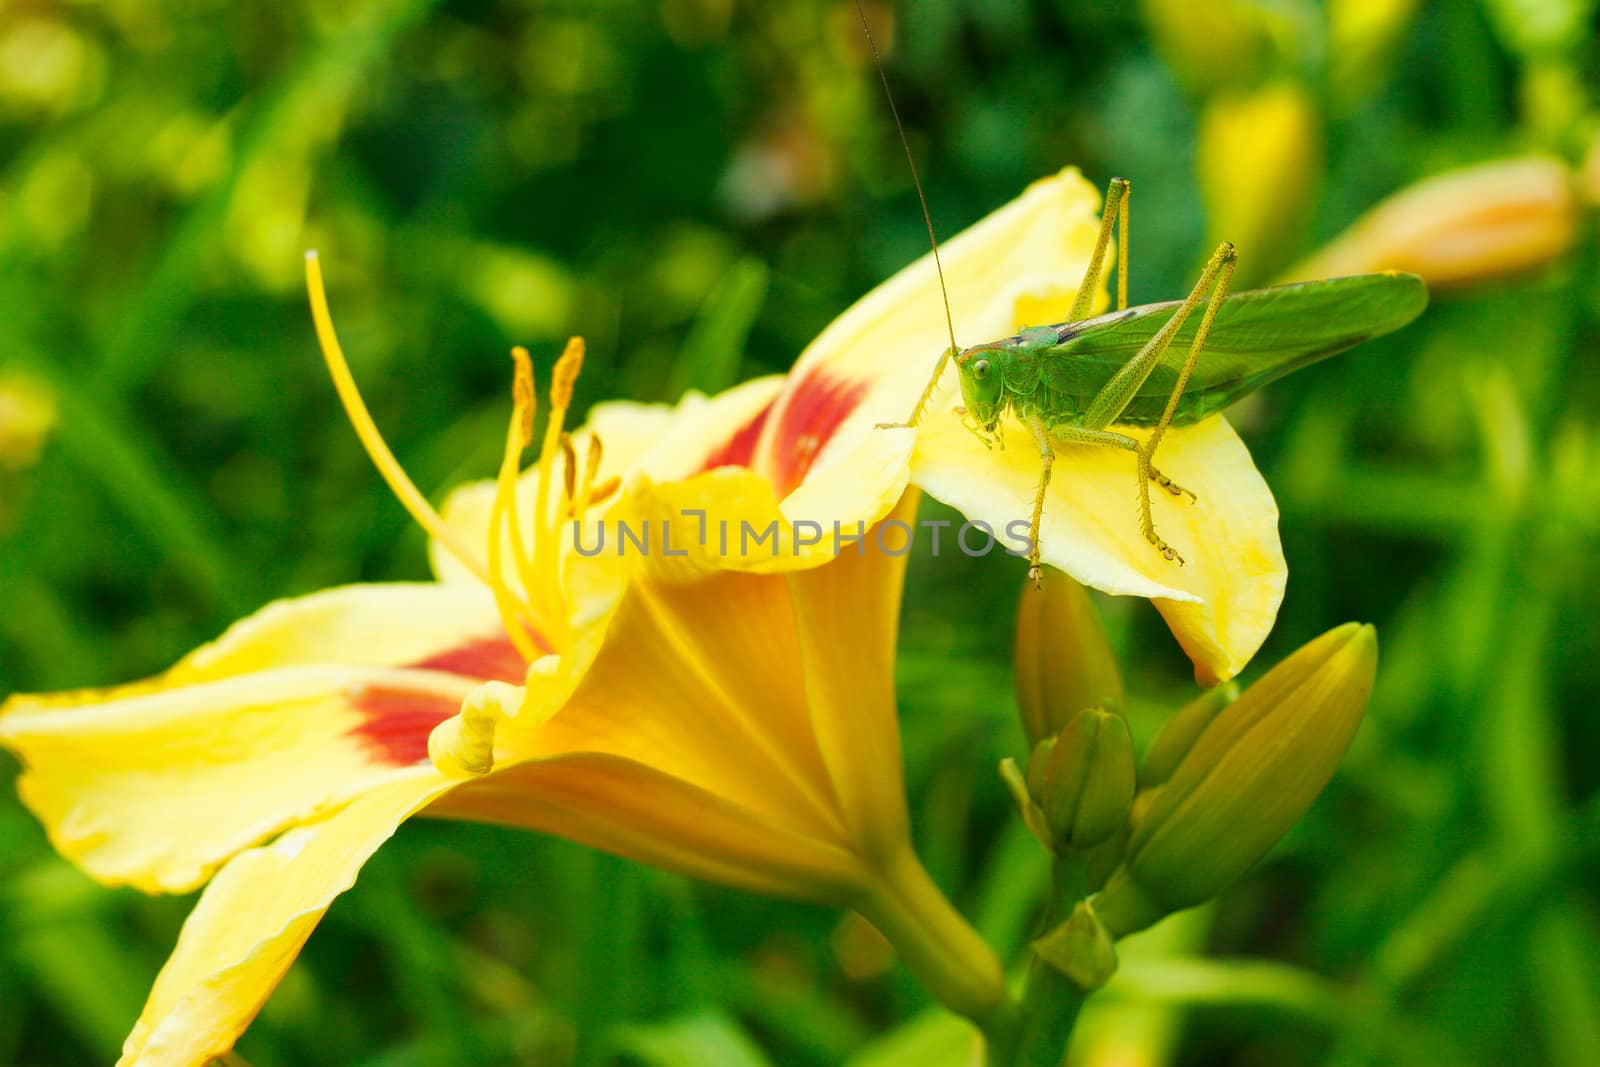 Grasshopper on lily flower by igor_stramyk